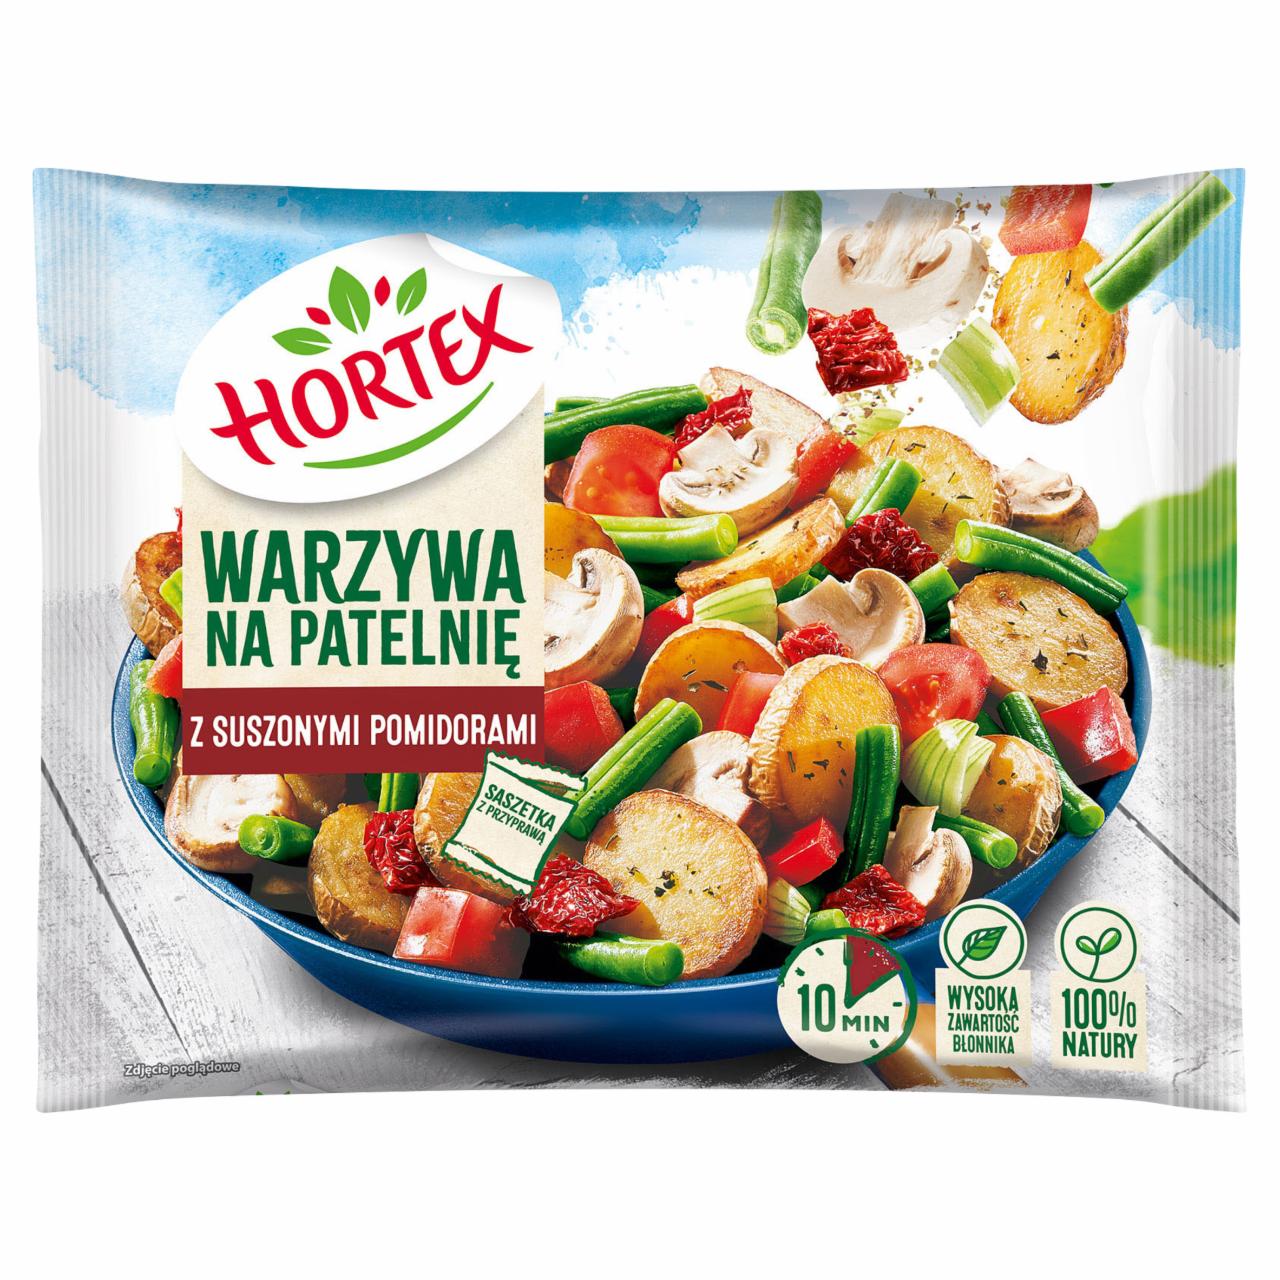 Zdjęcia - Hortex Warzywa na patelnię z suszonymi pomidorami 400 g 